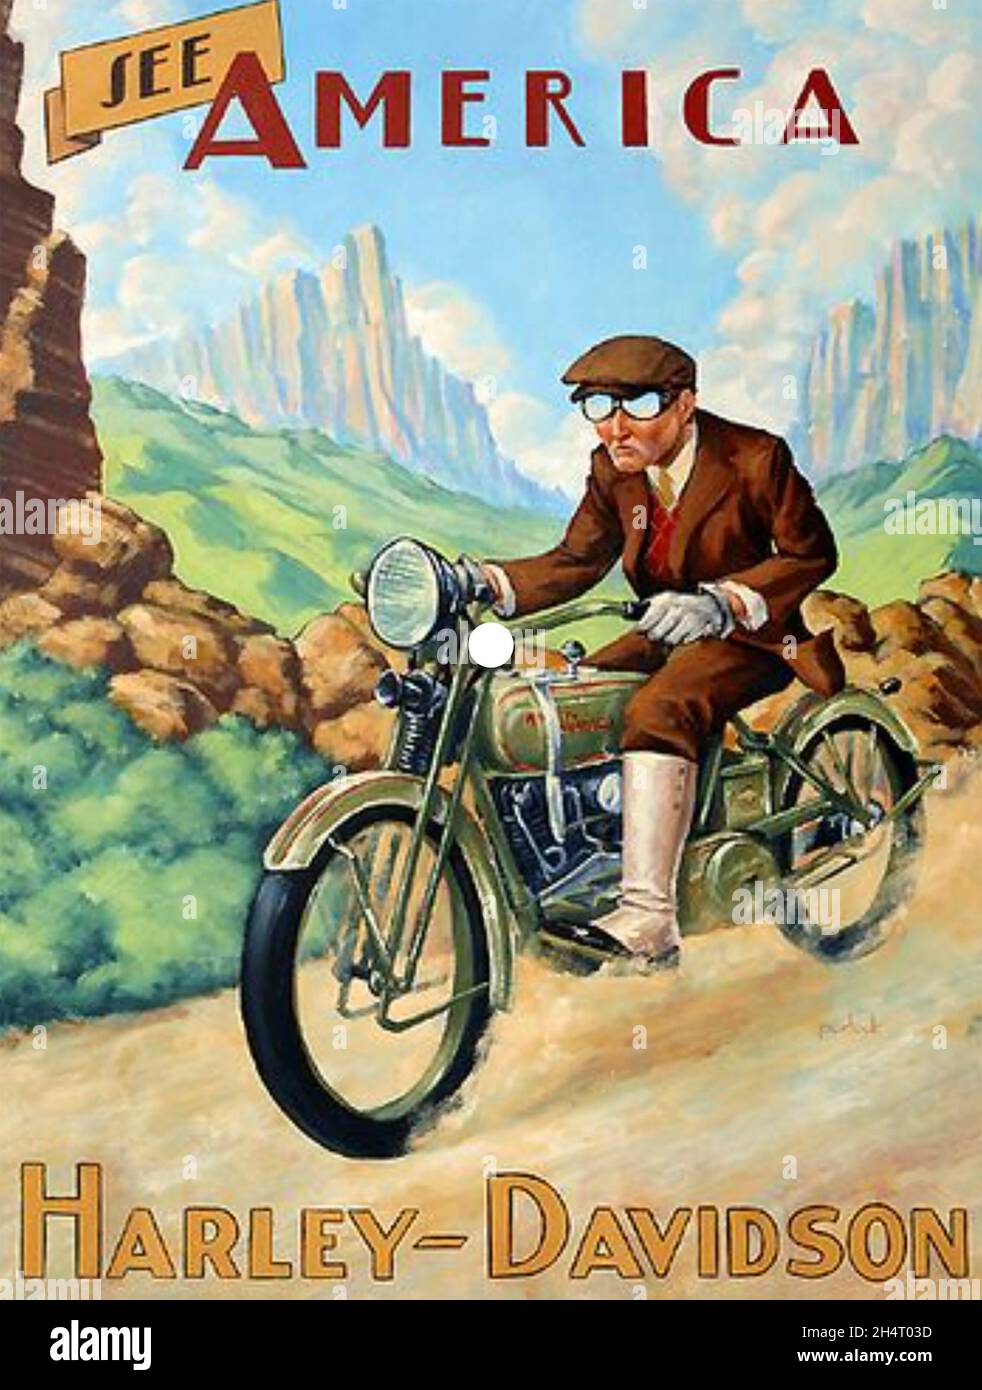 HARLEY-DAVIDSON amerikanischer Motorradhersteller. Stockfoto